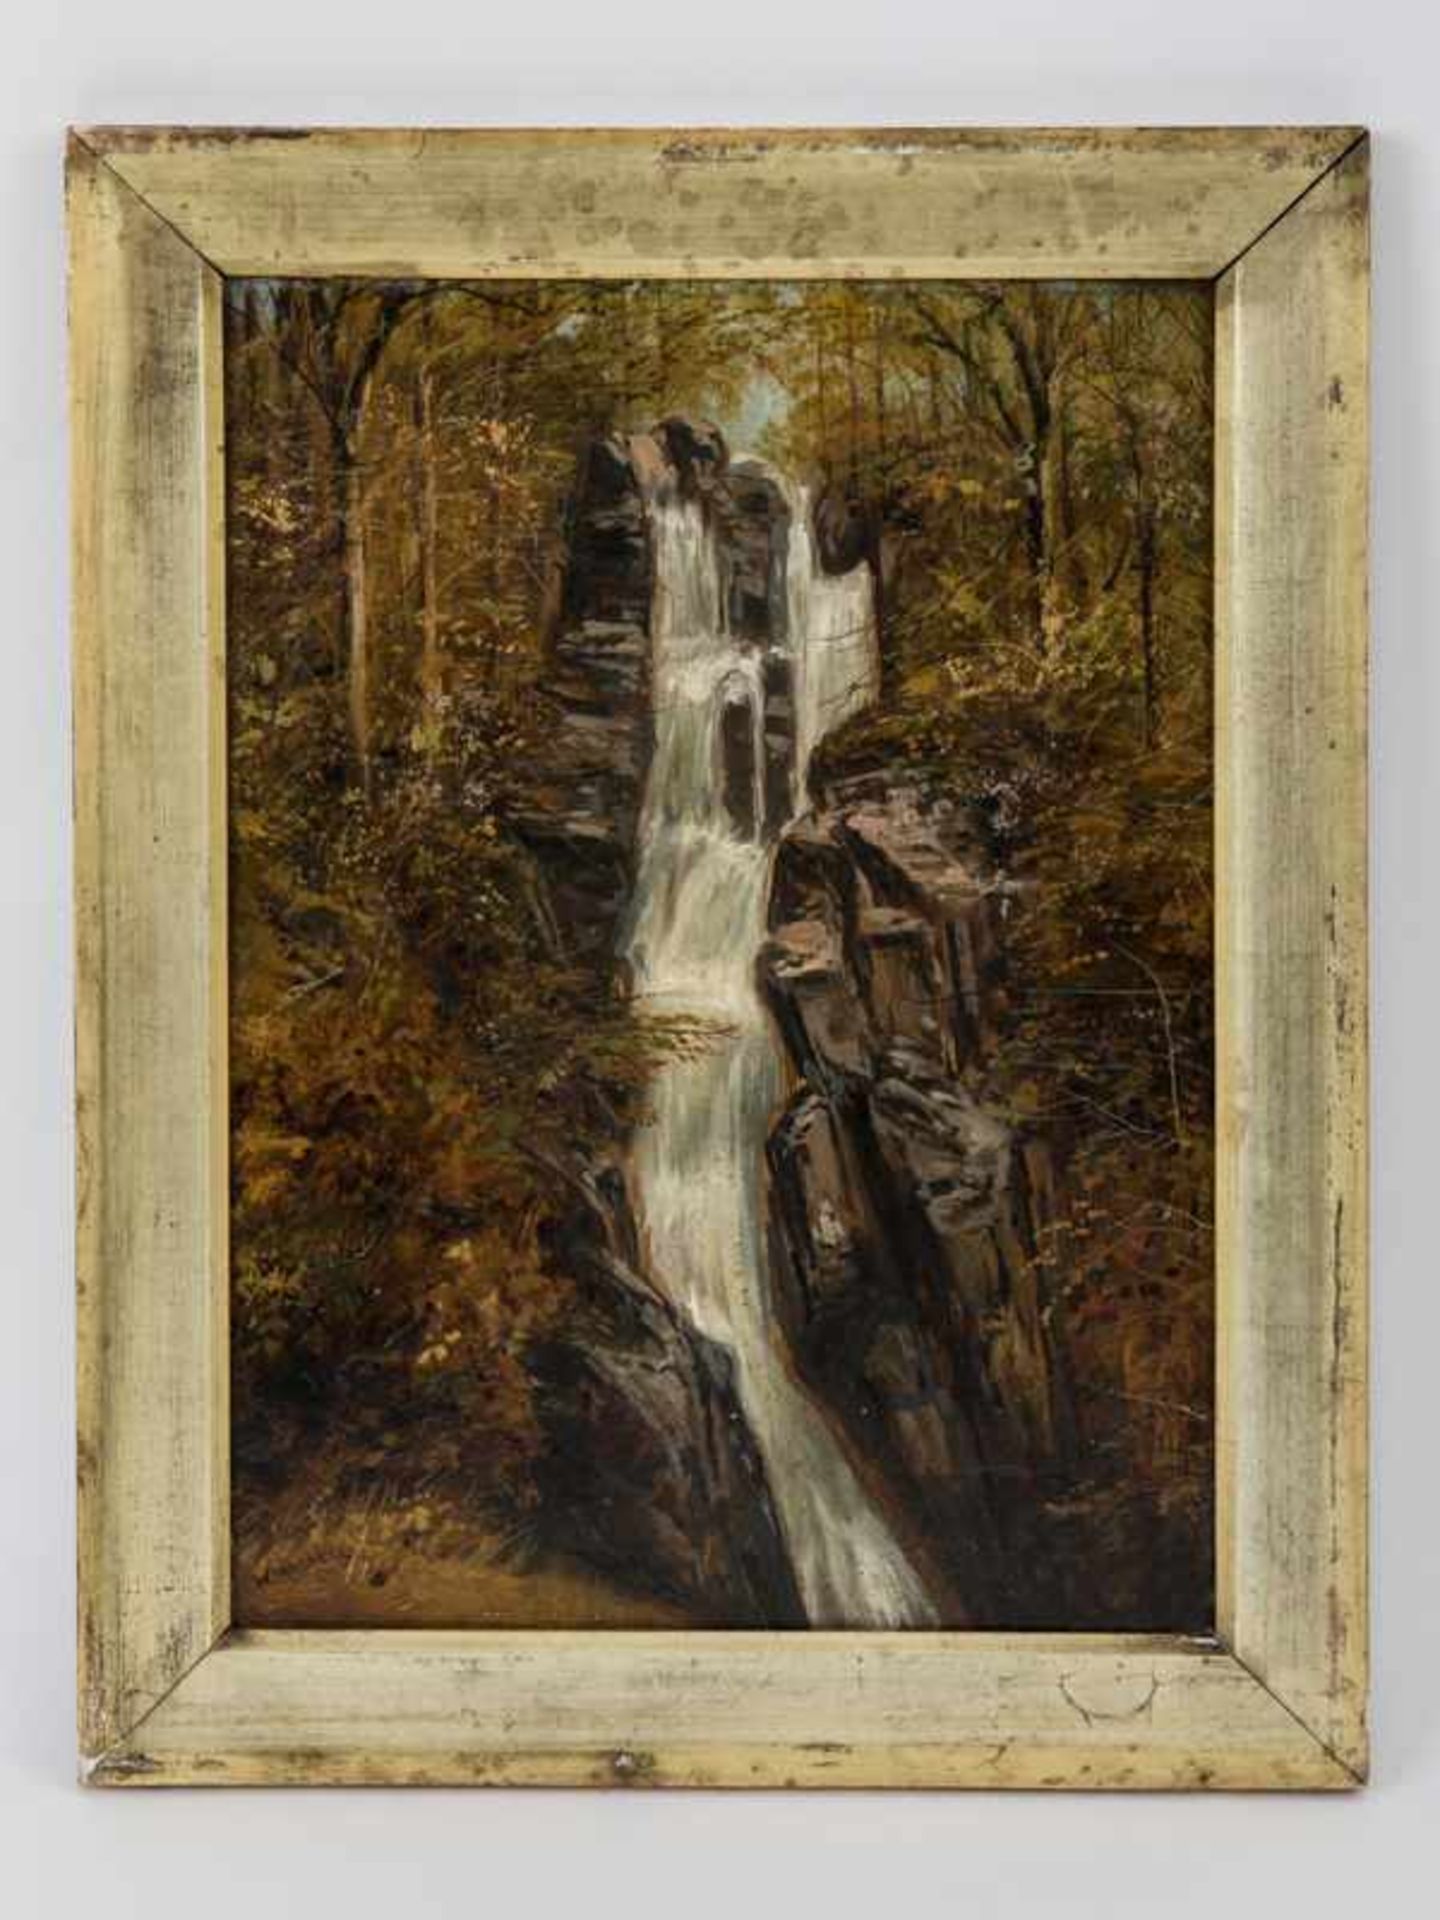 Mitchell of Maryport, William (ca. 1806 - 1900) Öl auf Holz. Herbstliche Landschaft mit